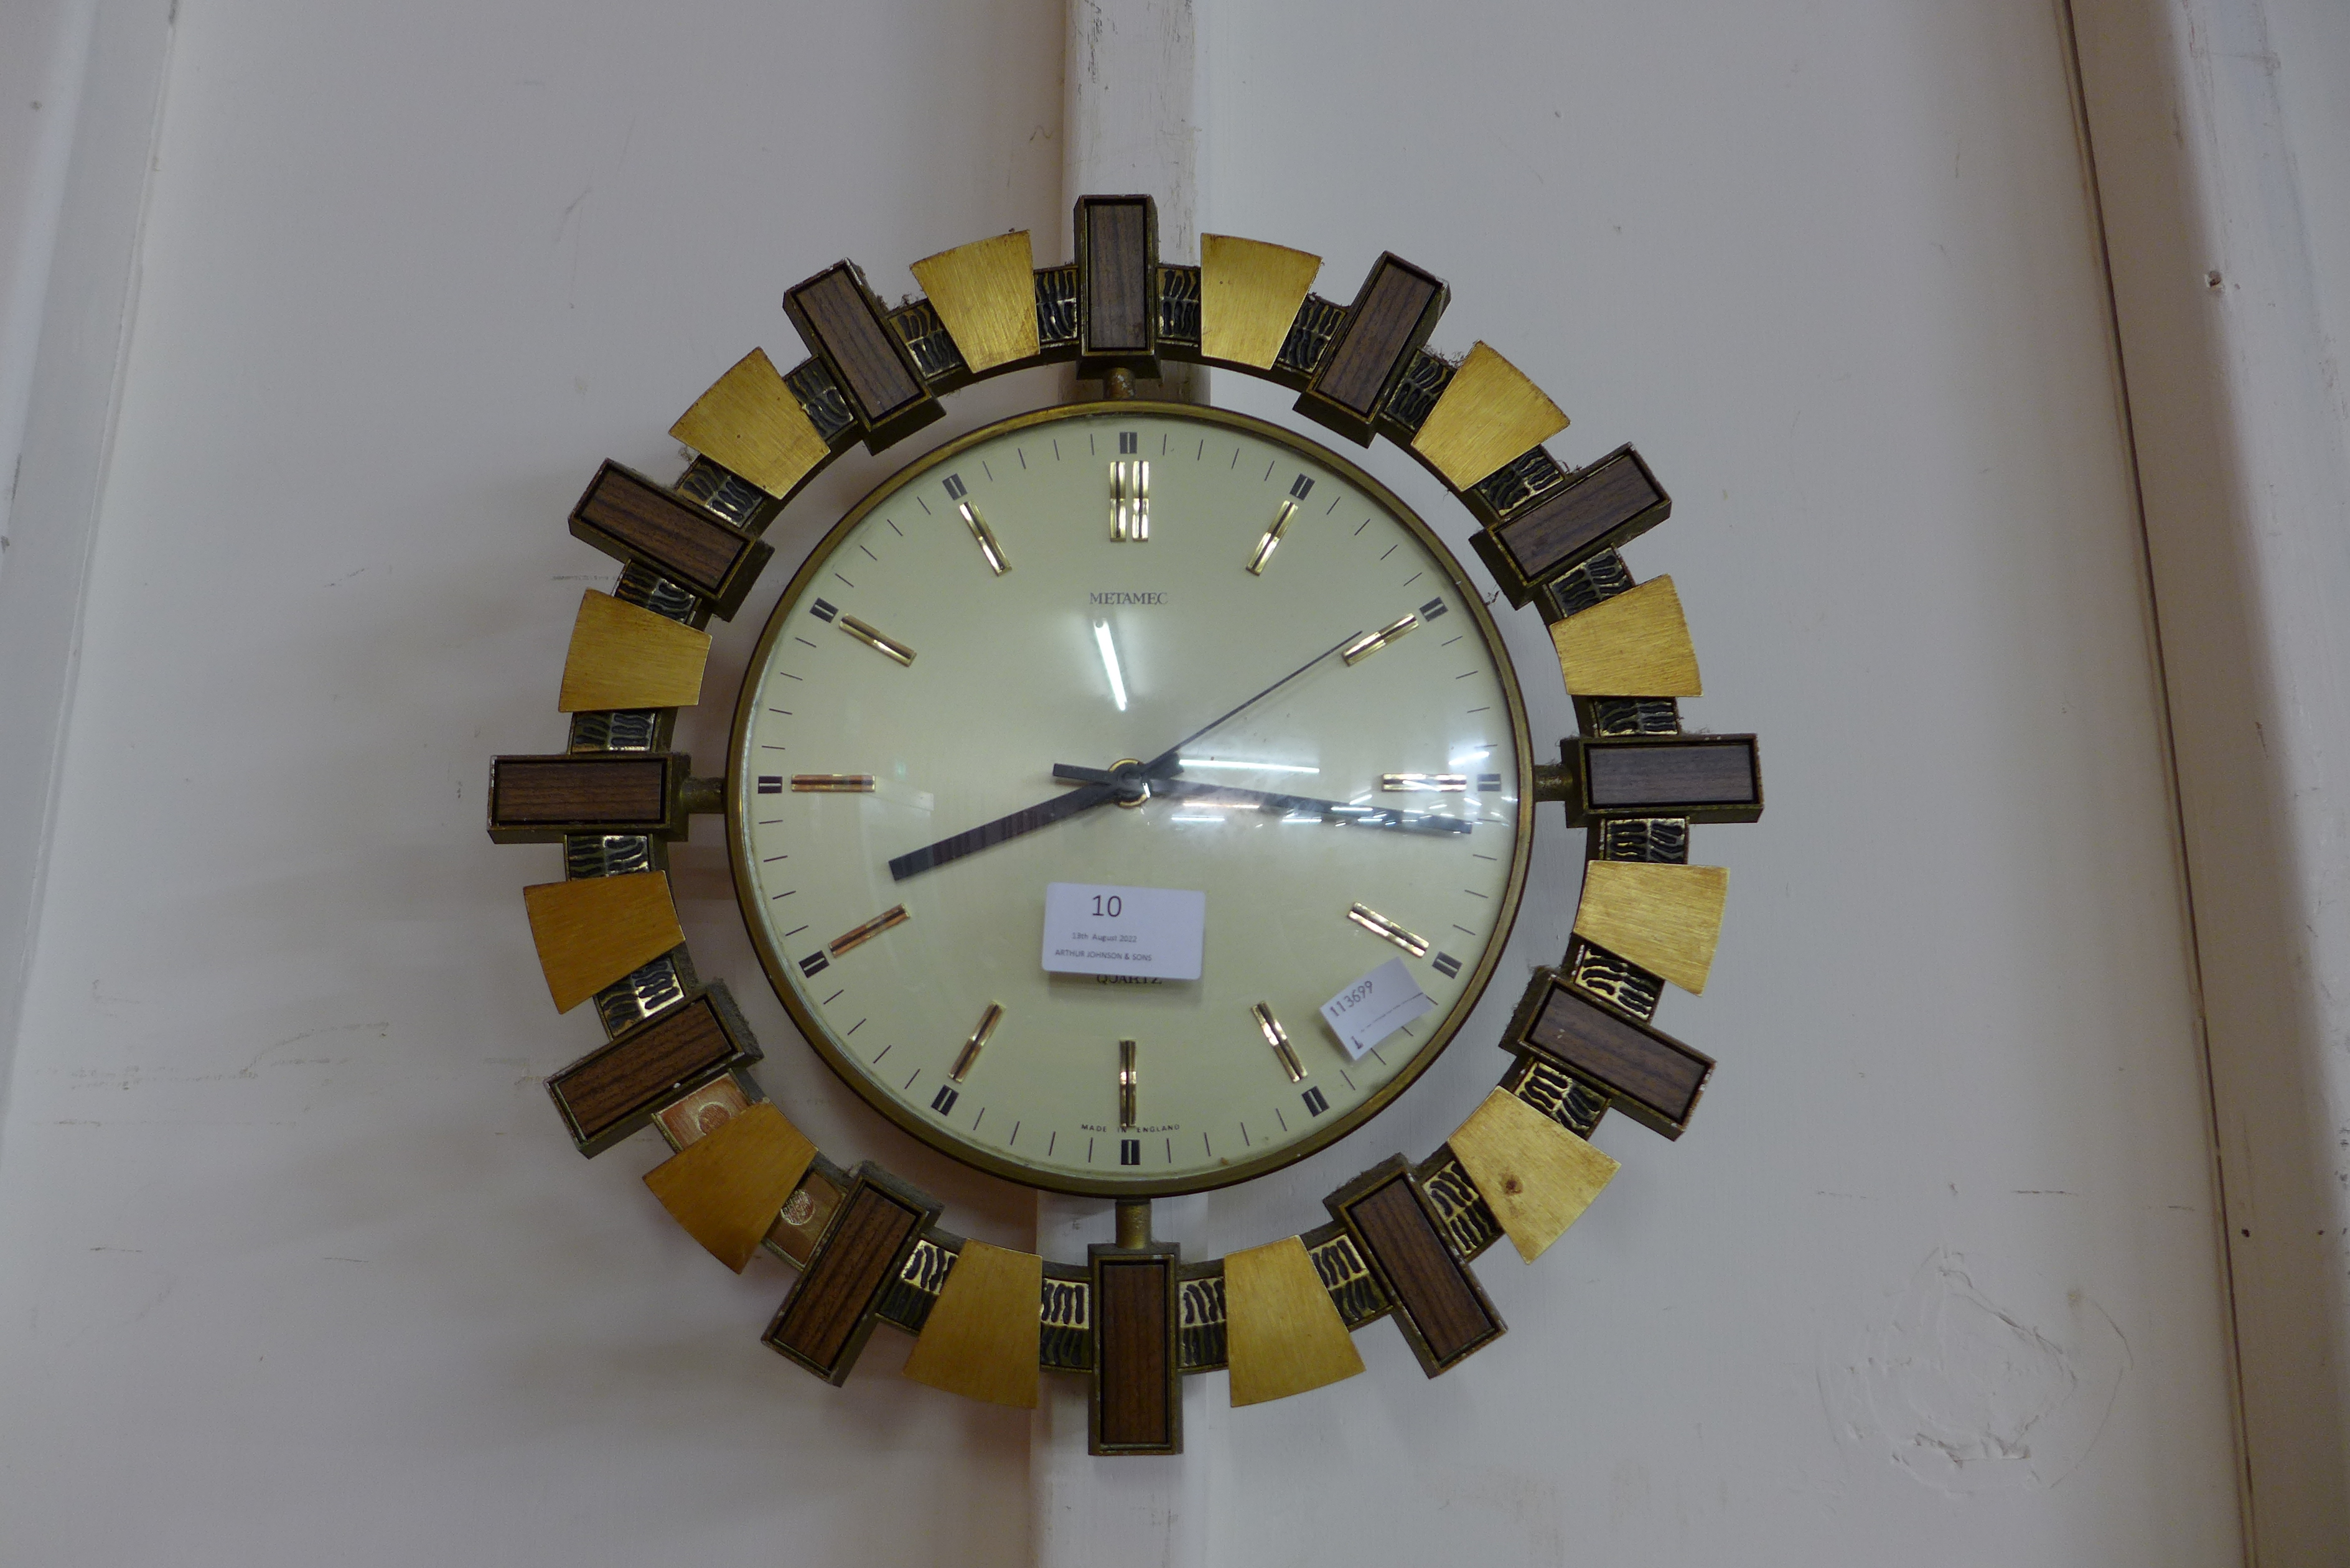 A vintage Metamec wall clock